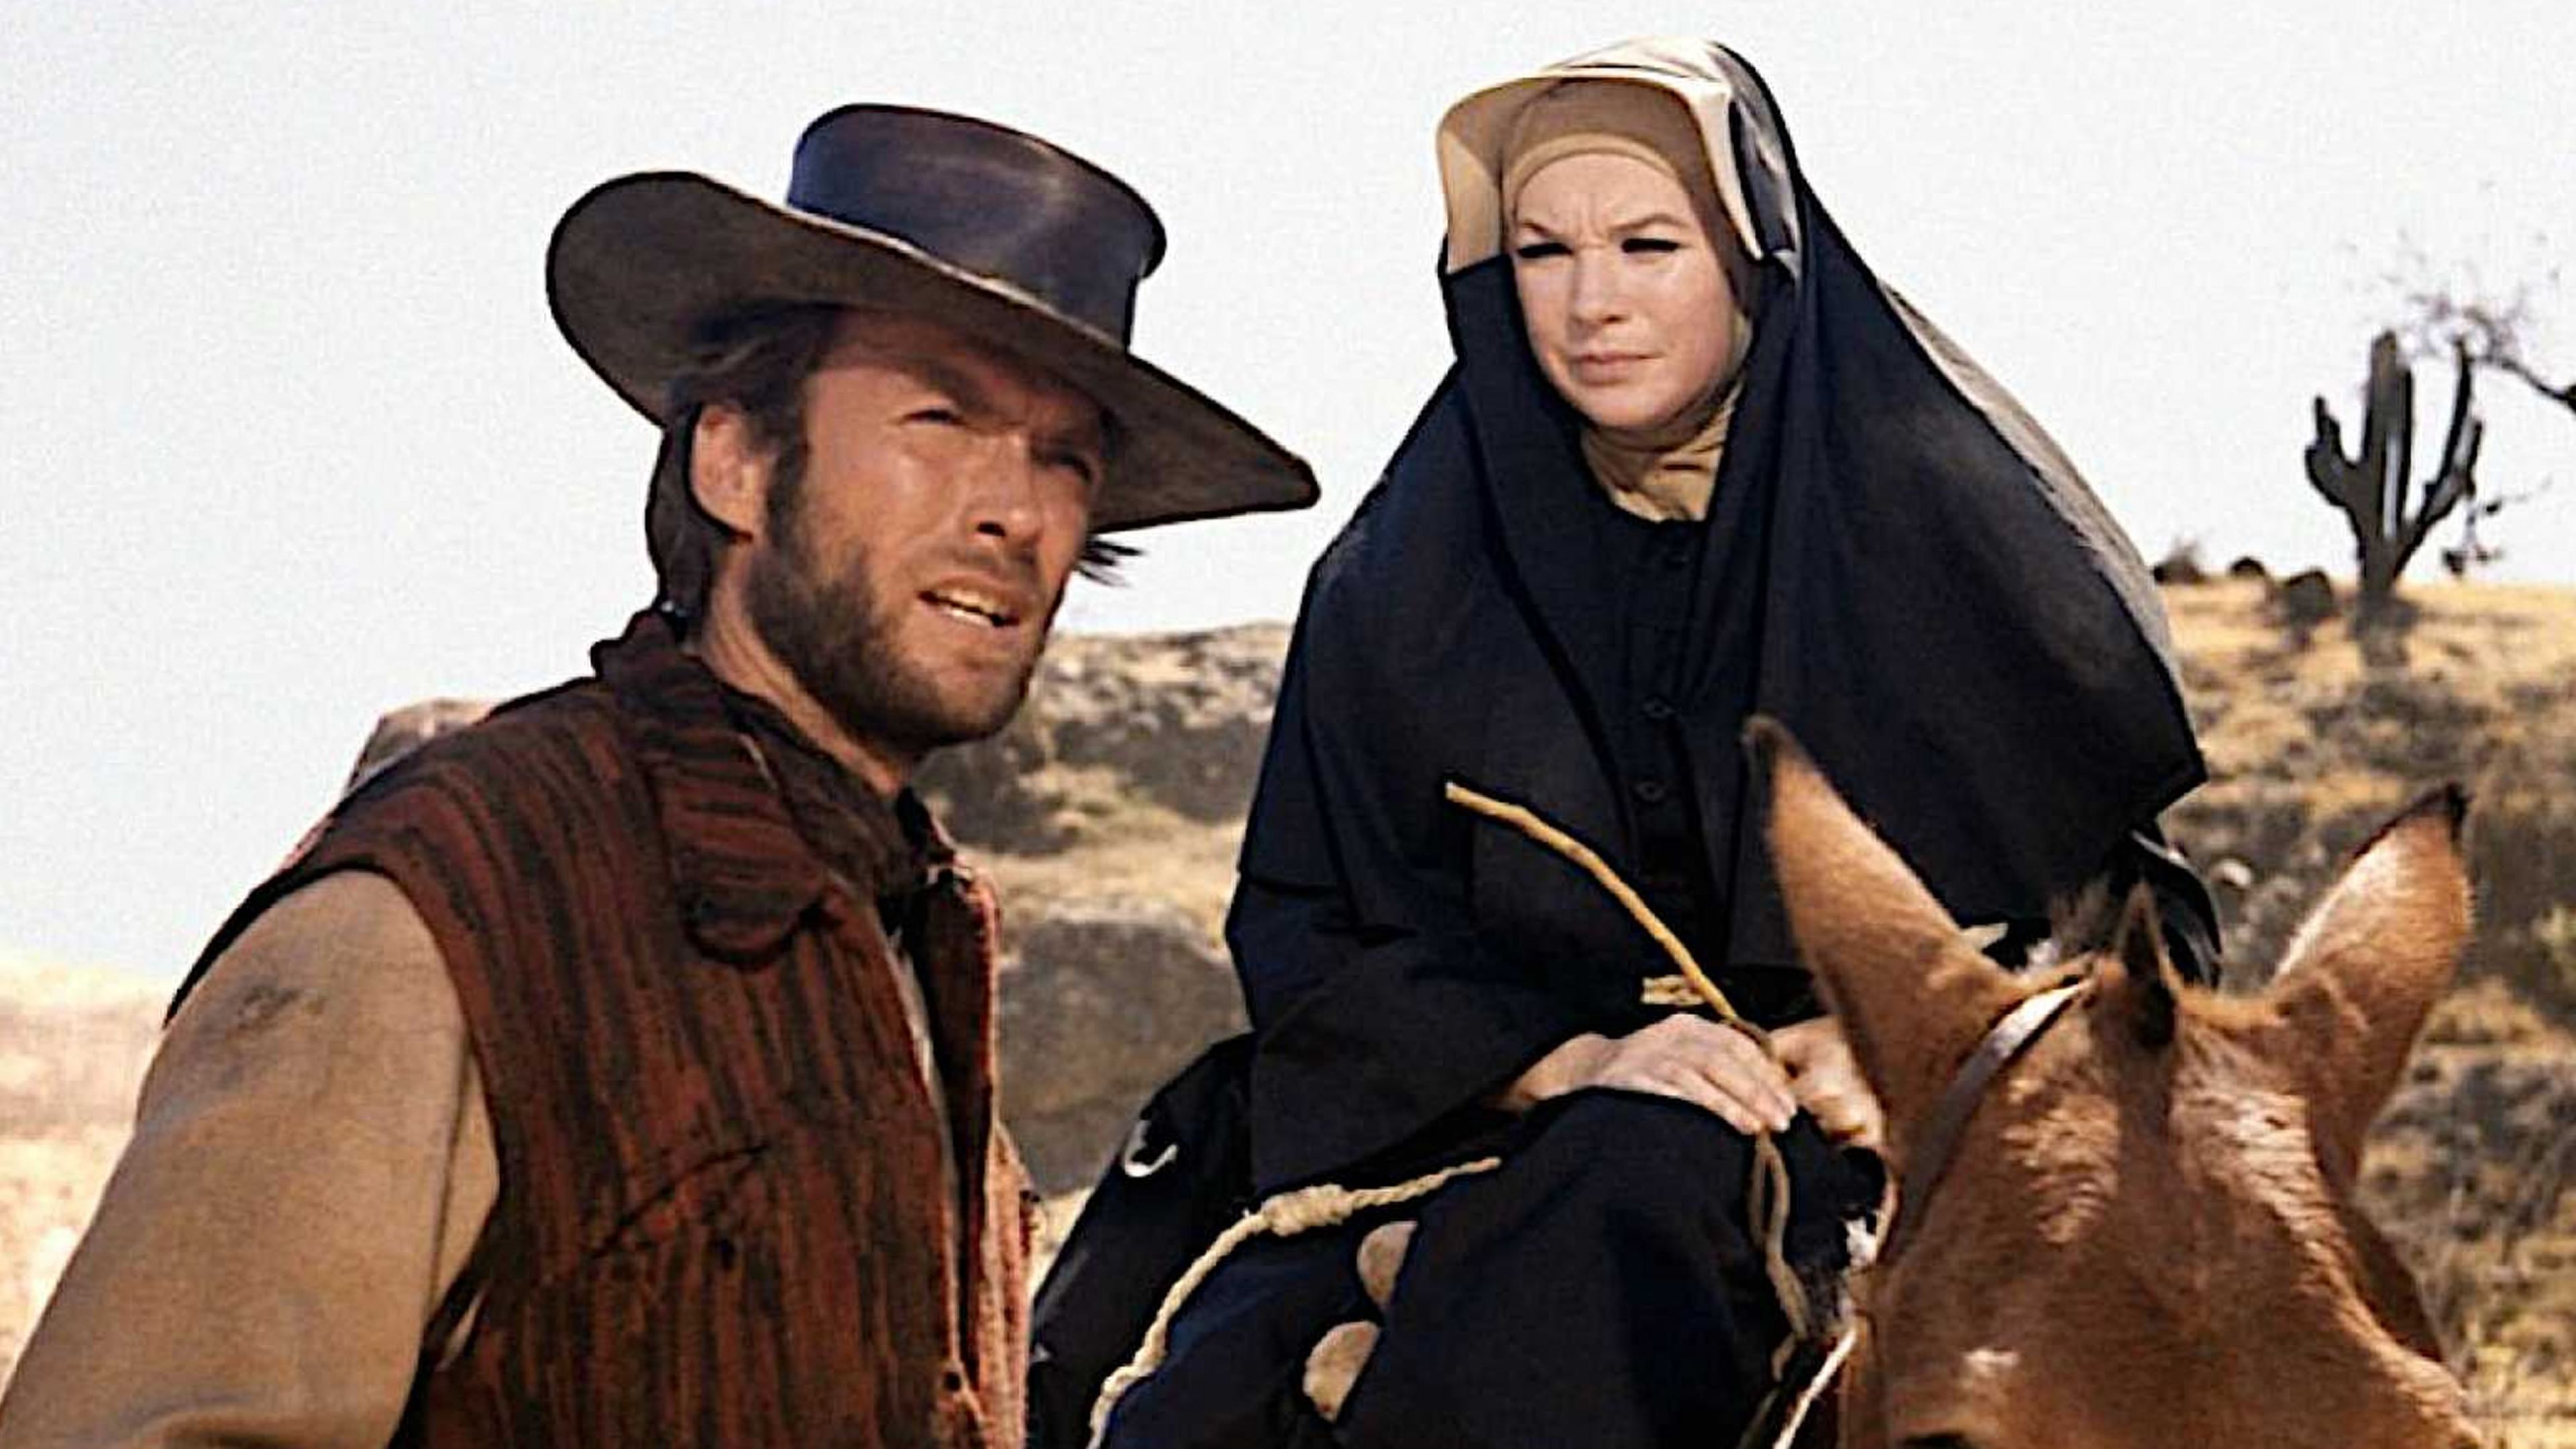 Dos mulas y una mujer (1970)